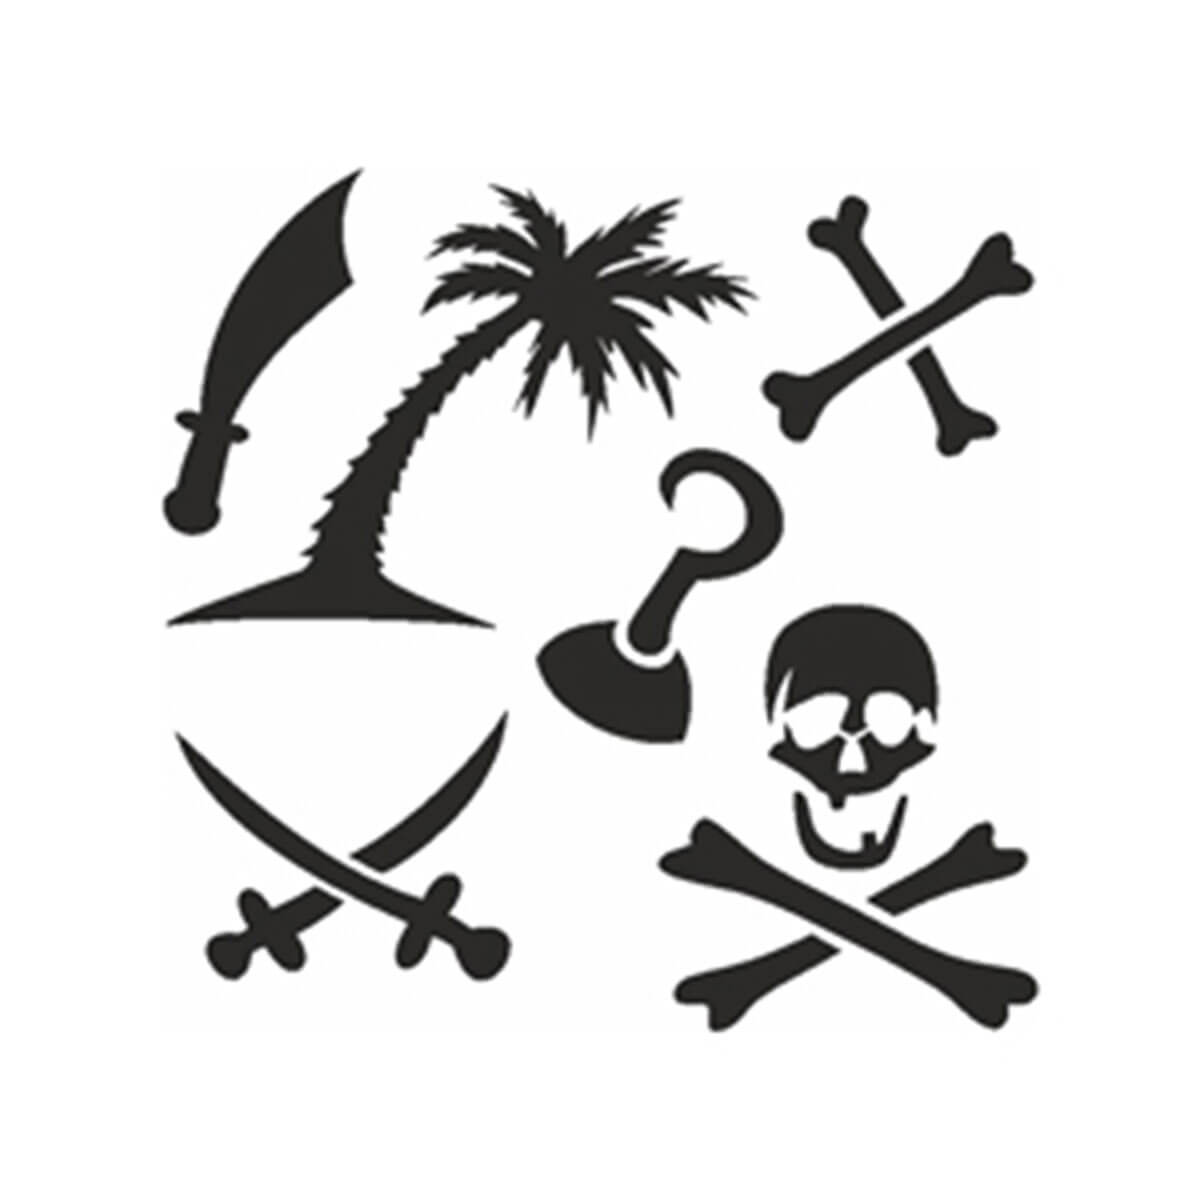 Selbstklebendes Schablonen-Set Piraten